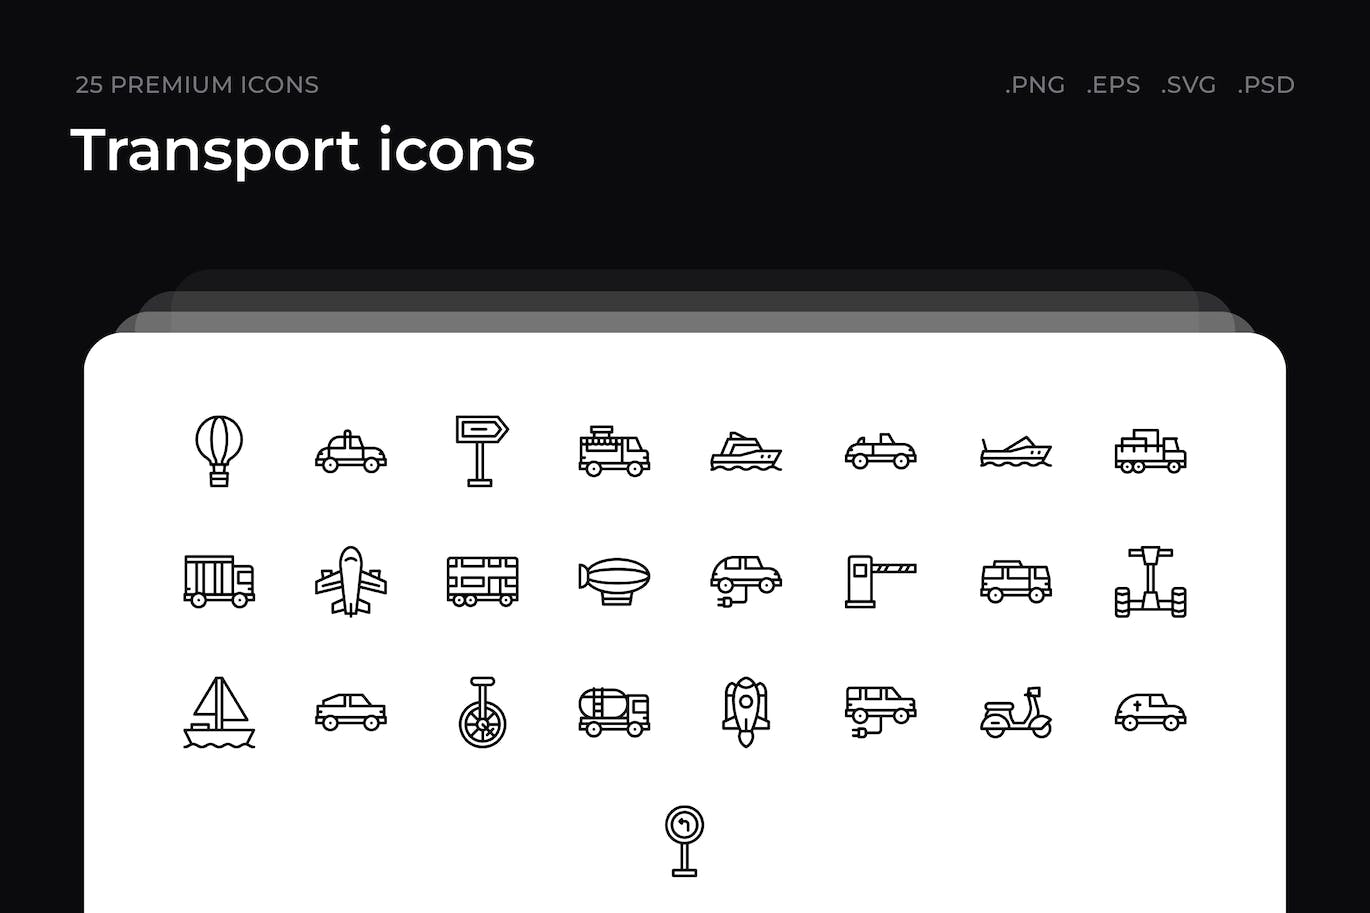 25枚交通工具主题简约线条矢量图标 Transport icons 图标素材 第1张